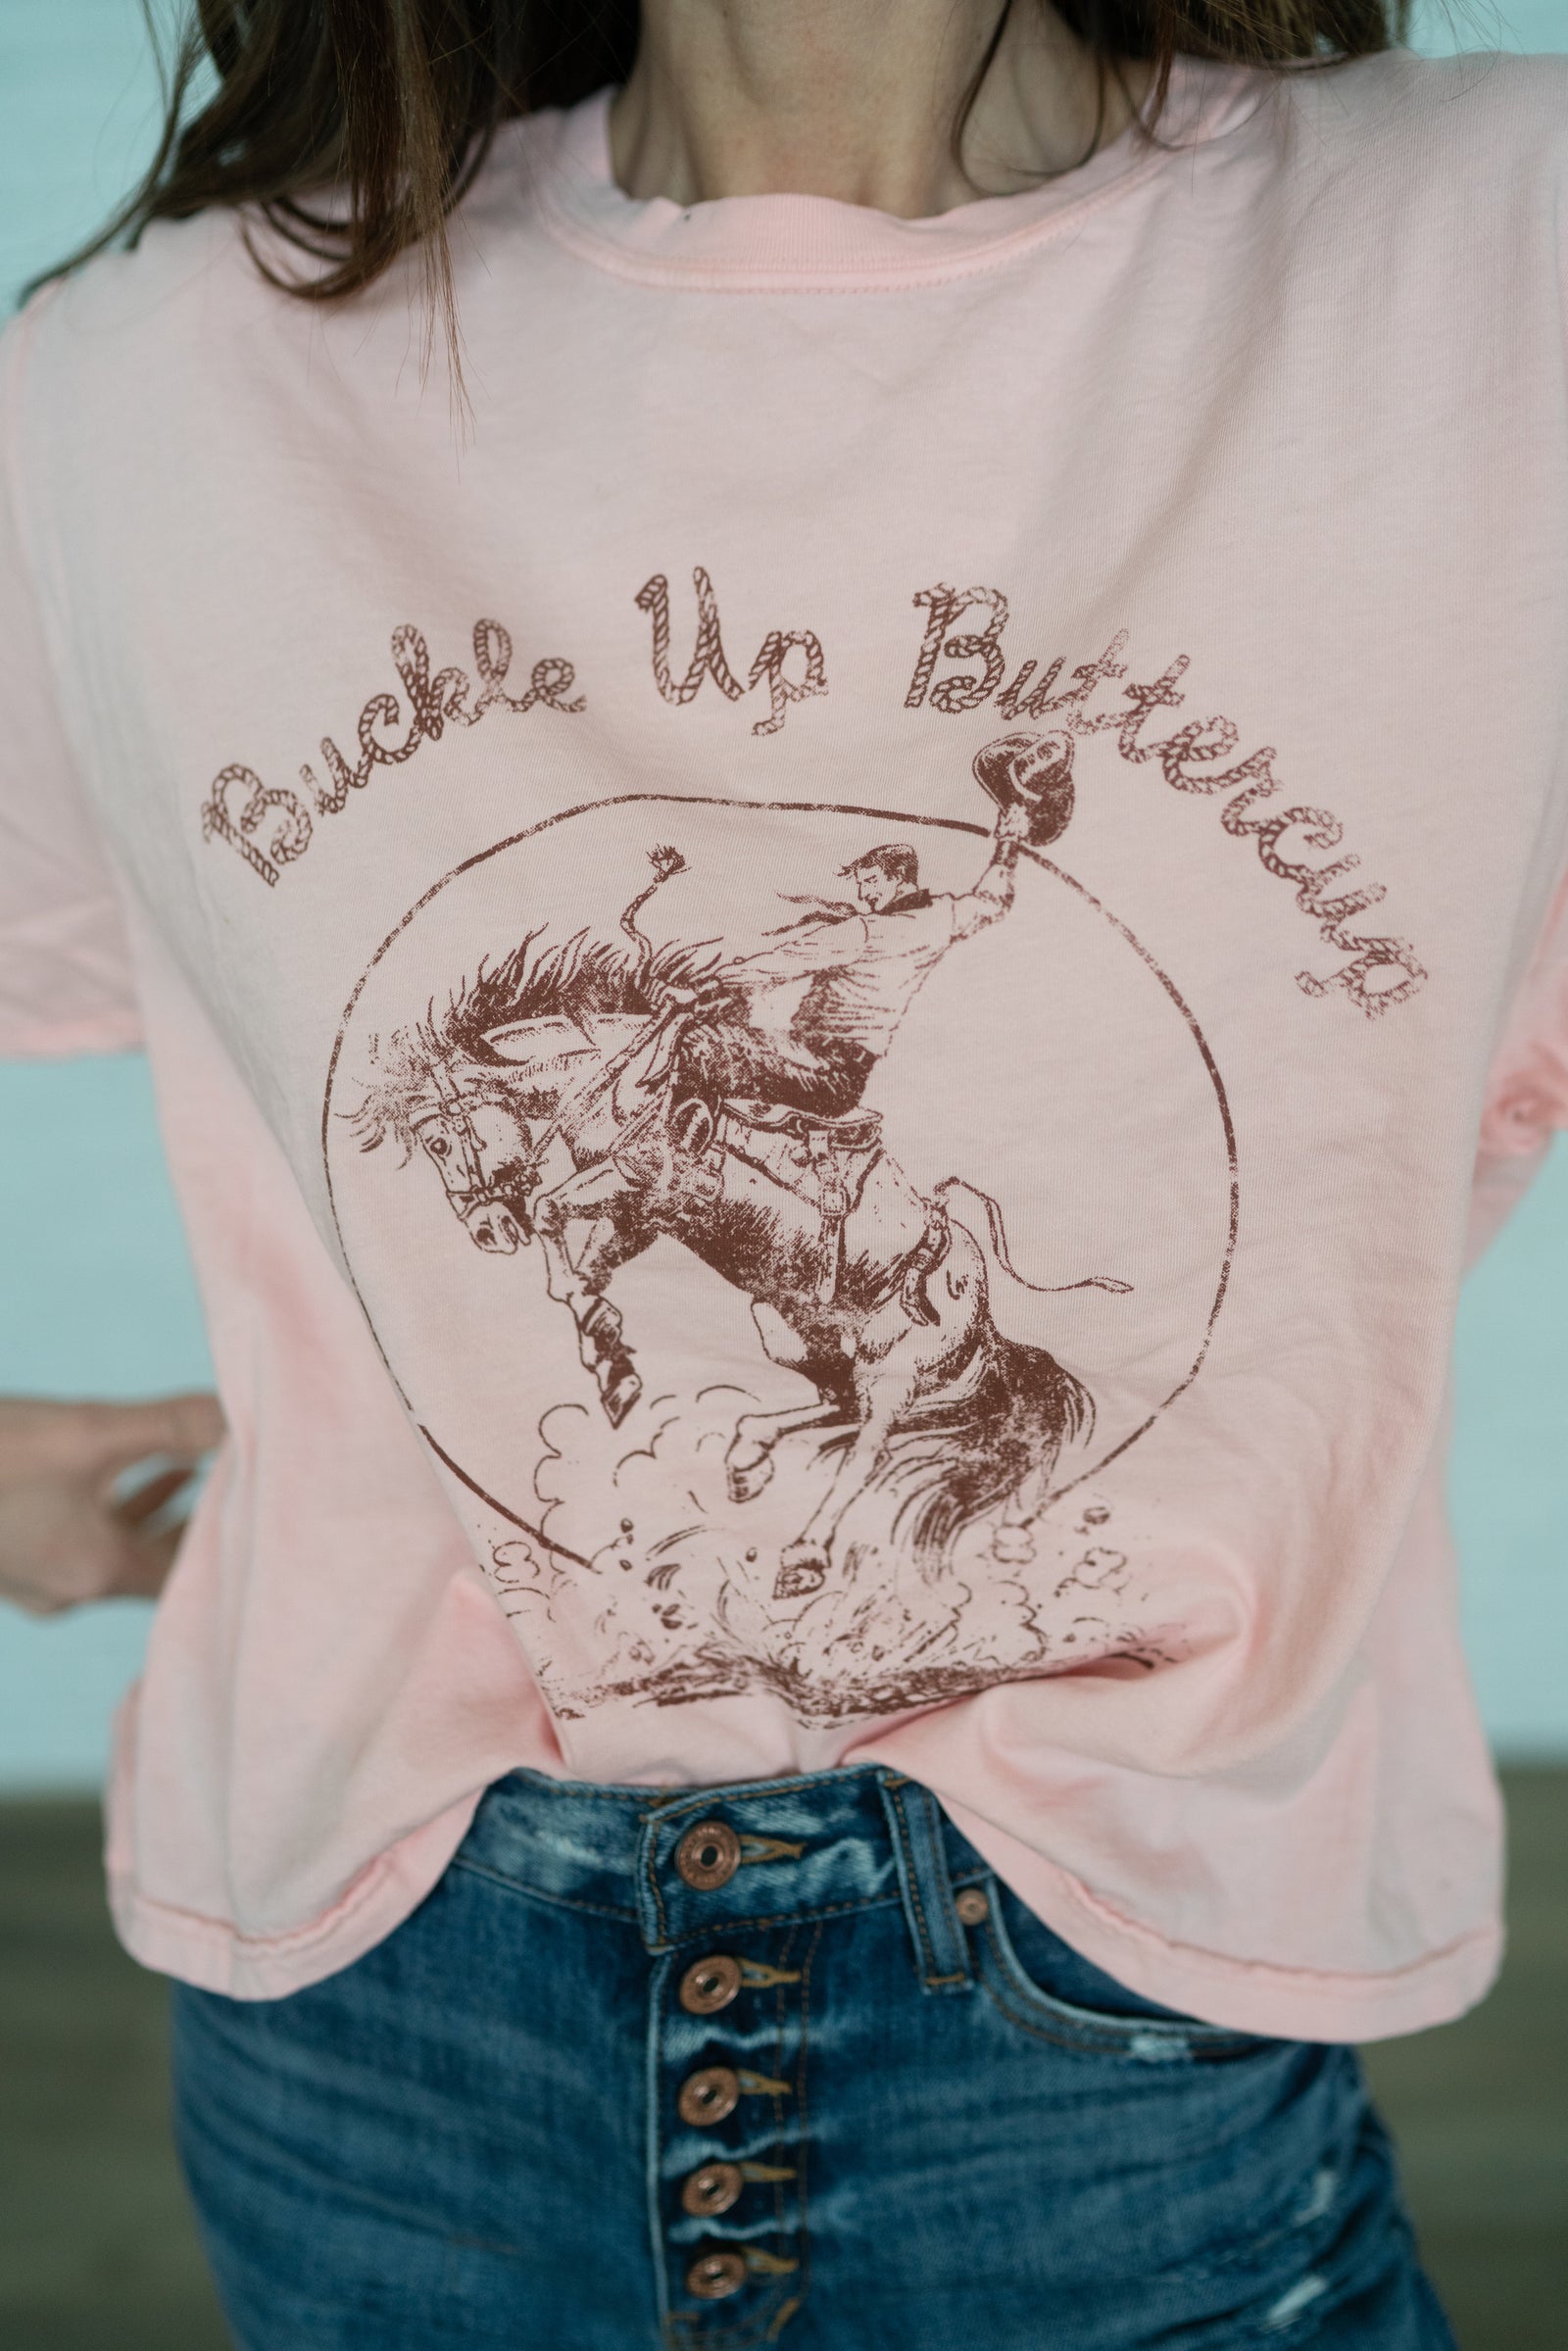 Buckle Up Buttercup T-Shirt